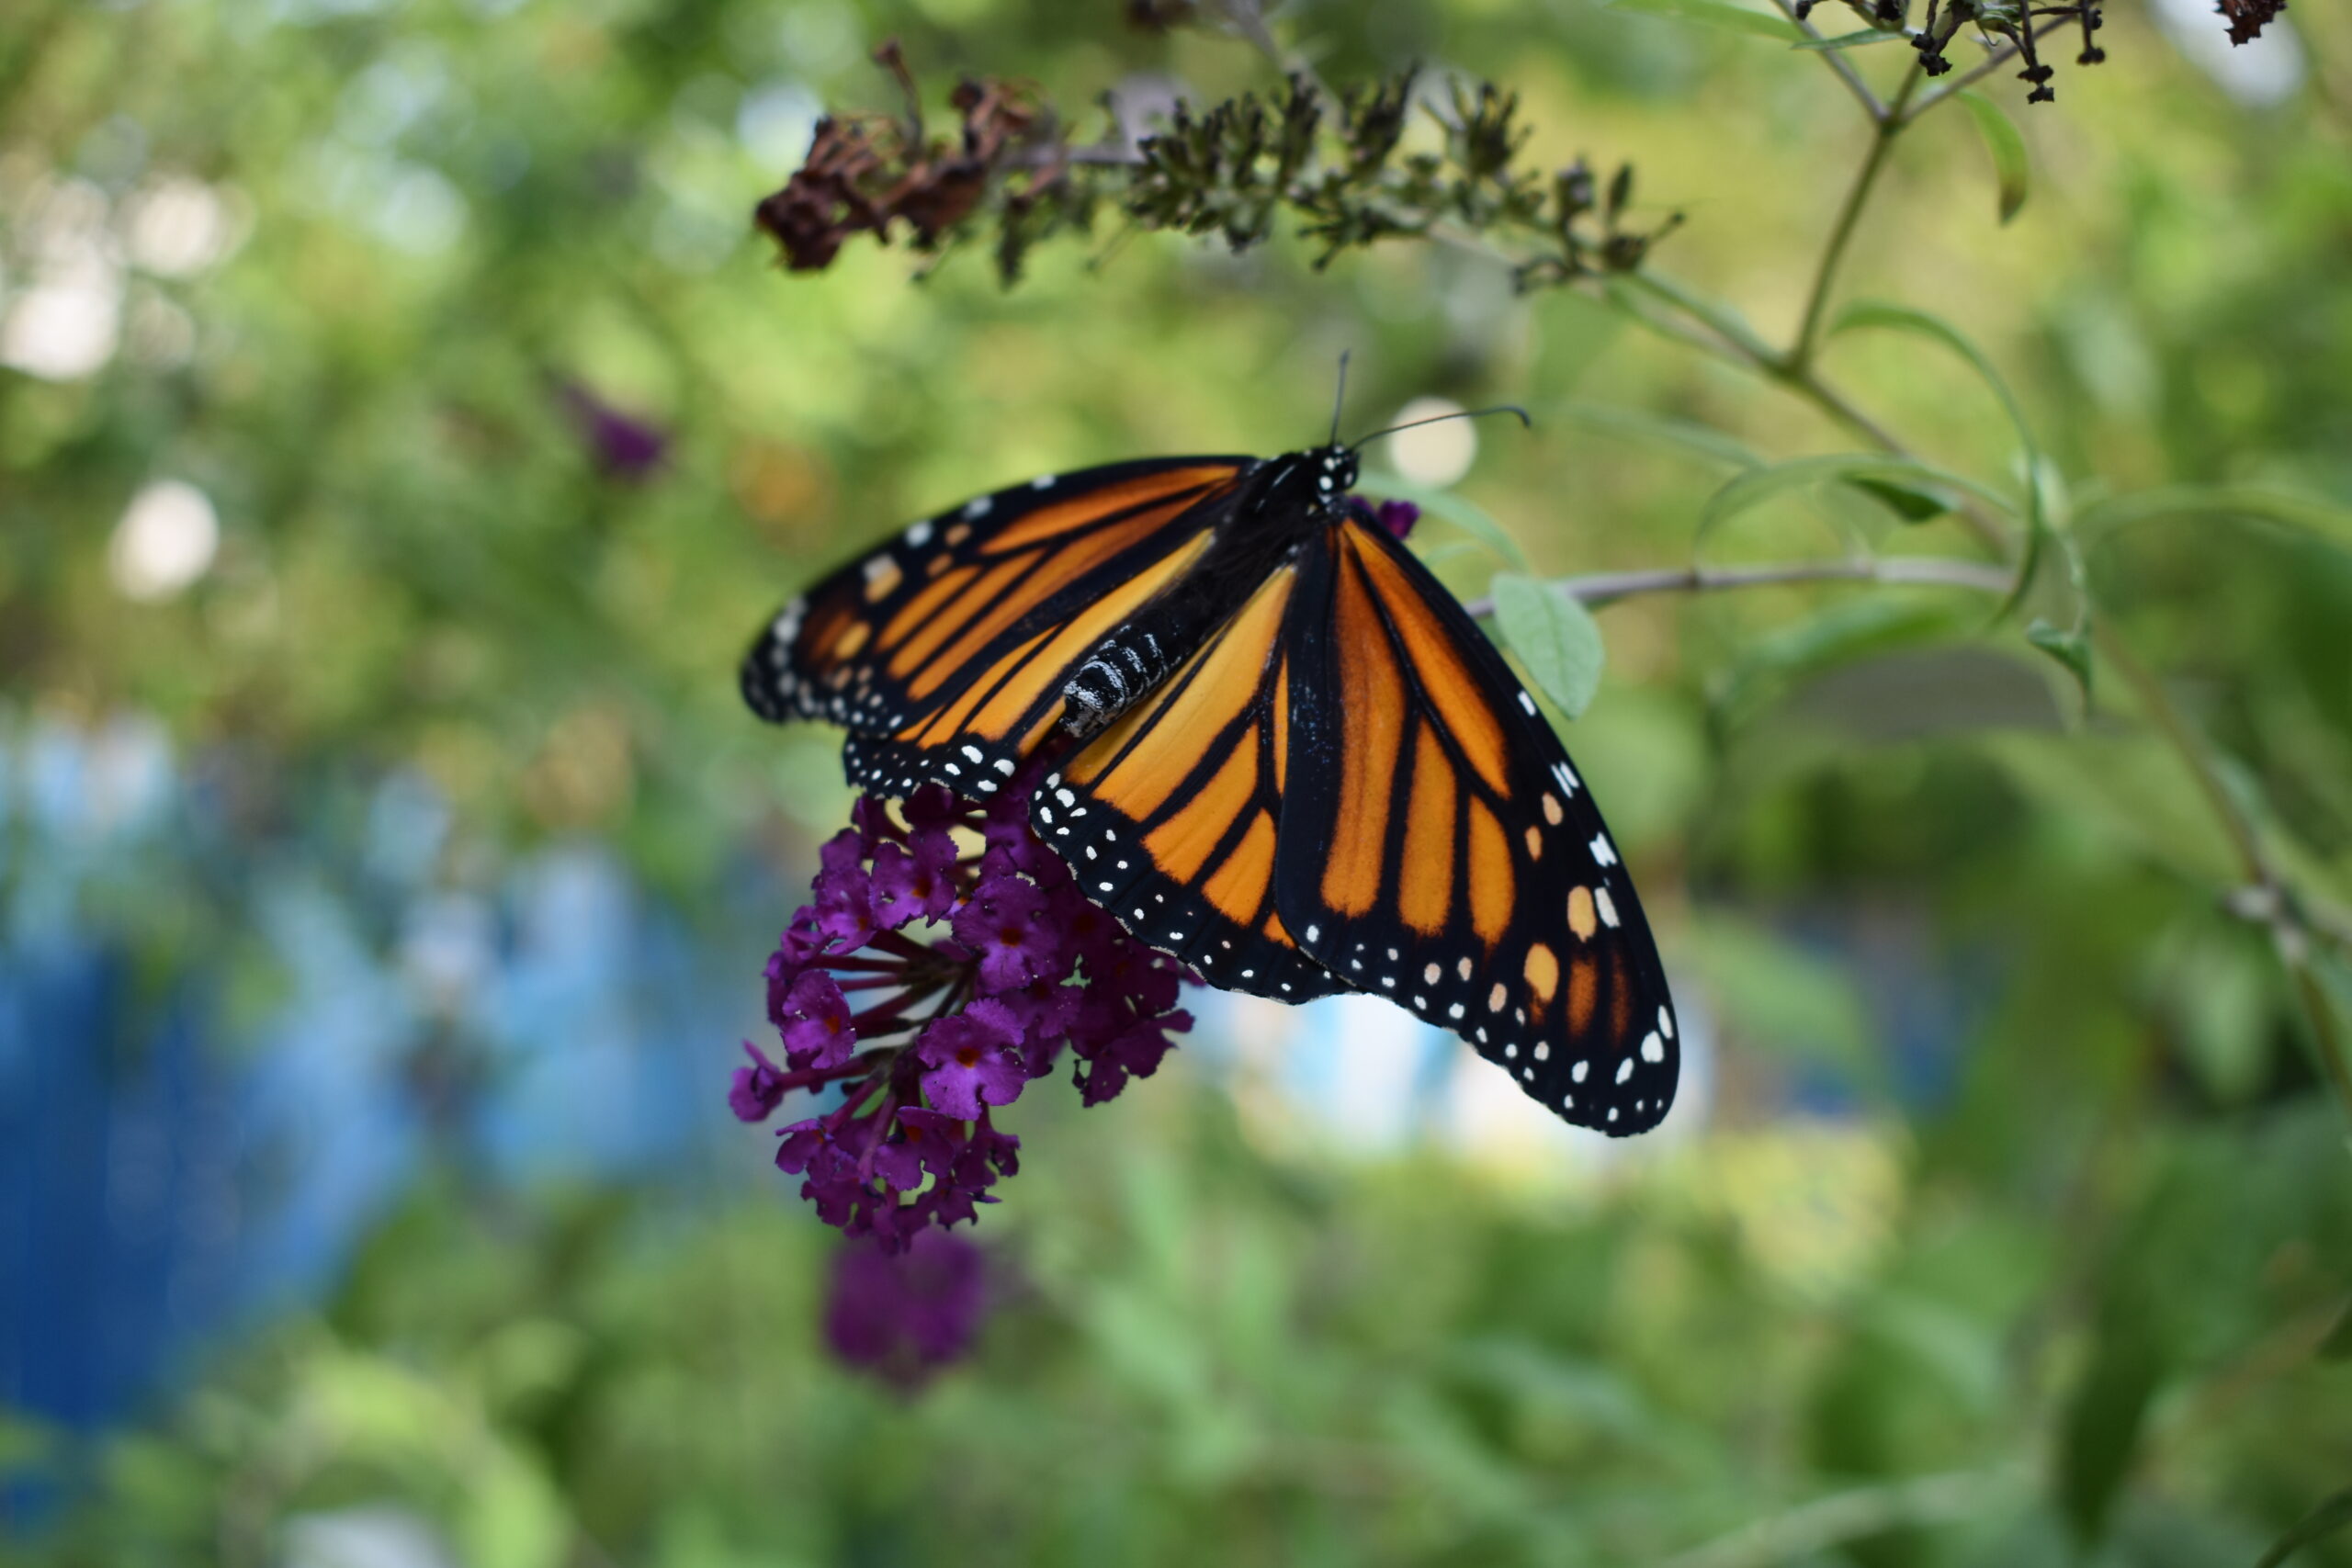 A monarch released in Mary Vienneau's garden. BRENDAN J. O'REILLY